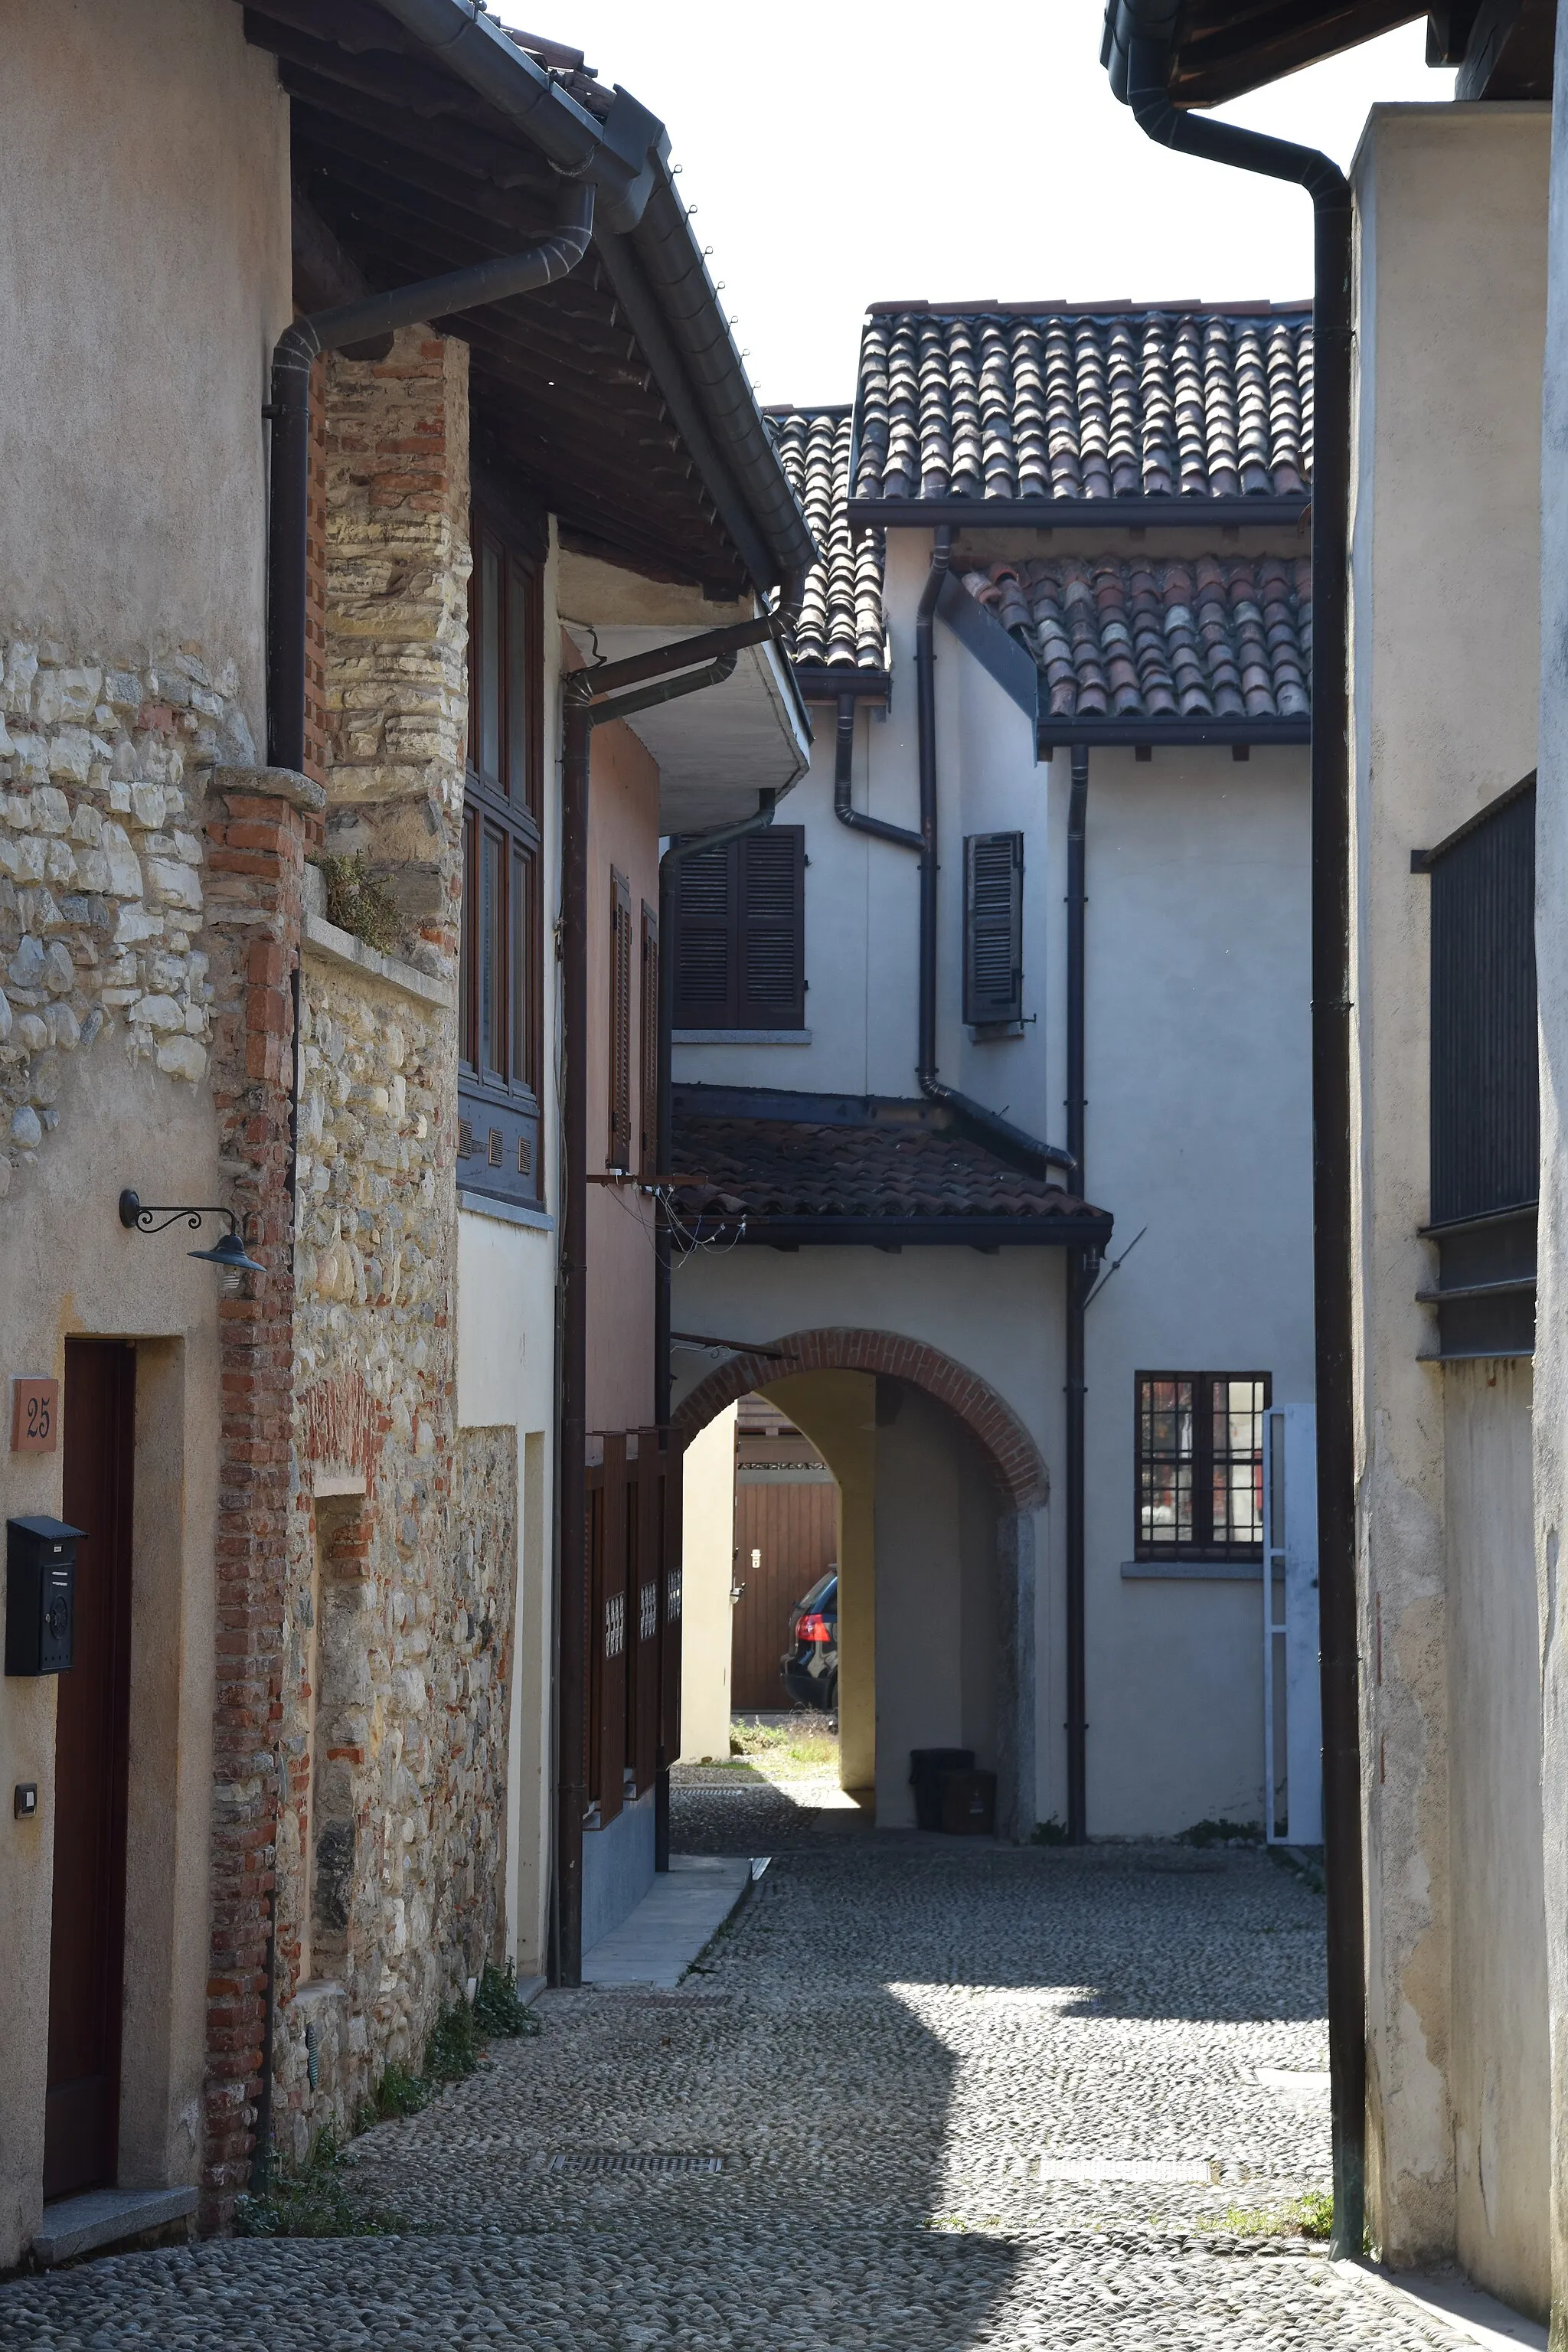 Photo showing: Abitazioni nei pressi del chiostro di Voltorre, Gavirate, provincia di Varese.